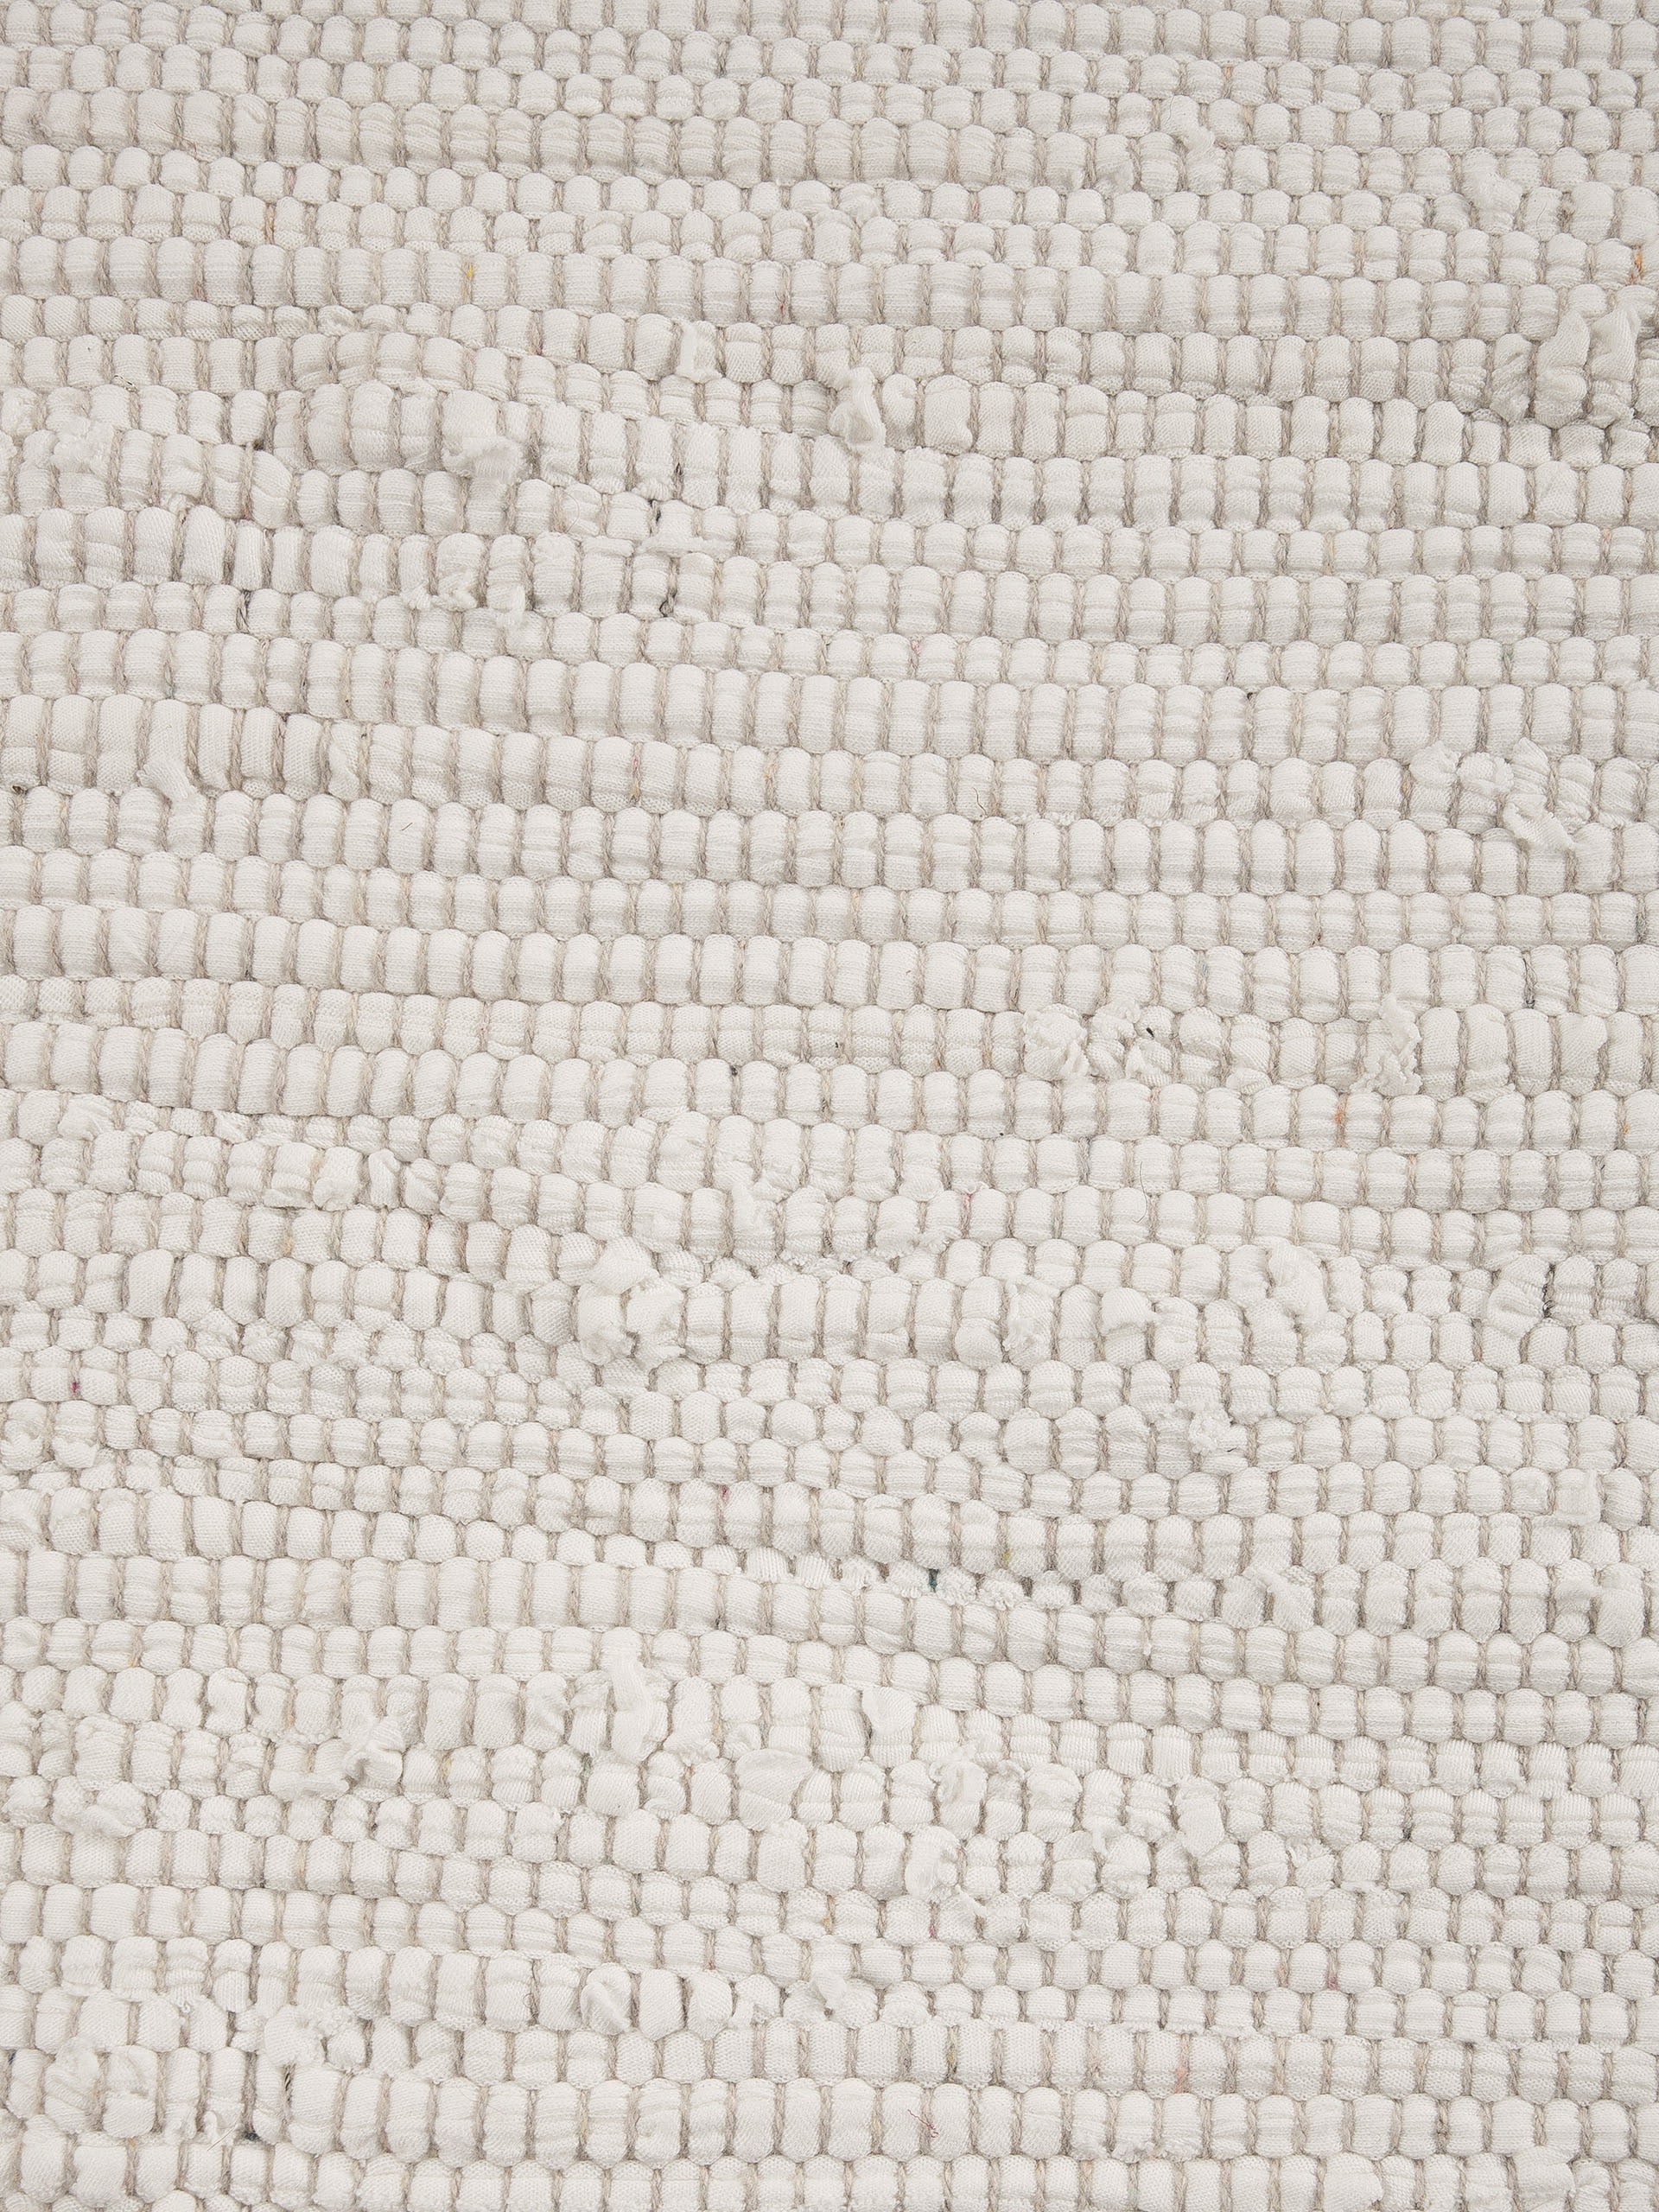 carpetfine Teppich »Kelim Chindi uni«, rechteckig, Wendeteppich, reine Baumwolle, handgewebt, Uni-Farben, mit Fransen